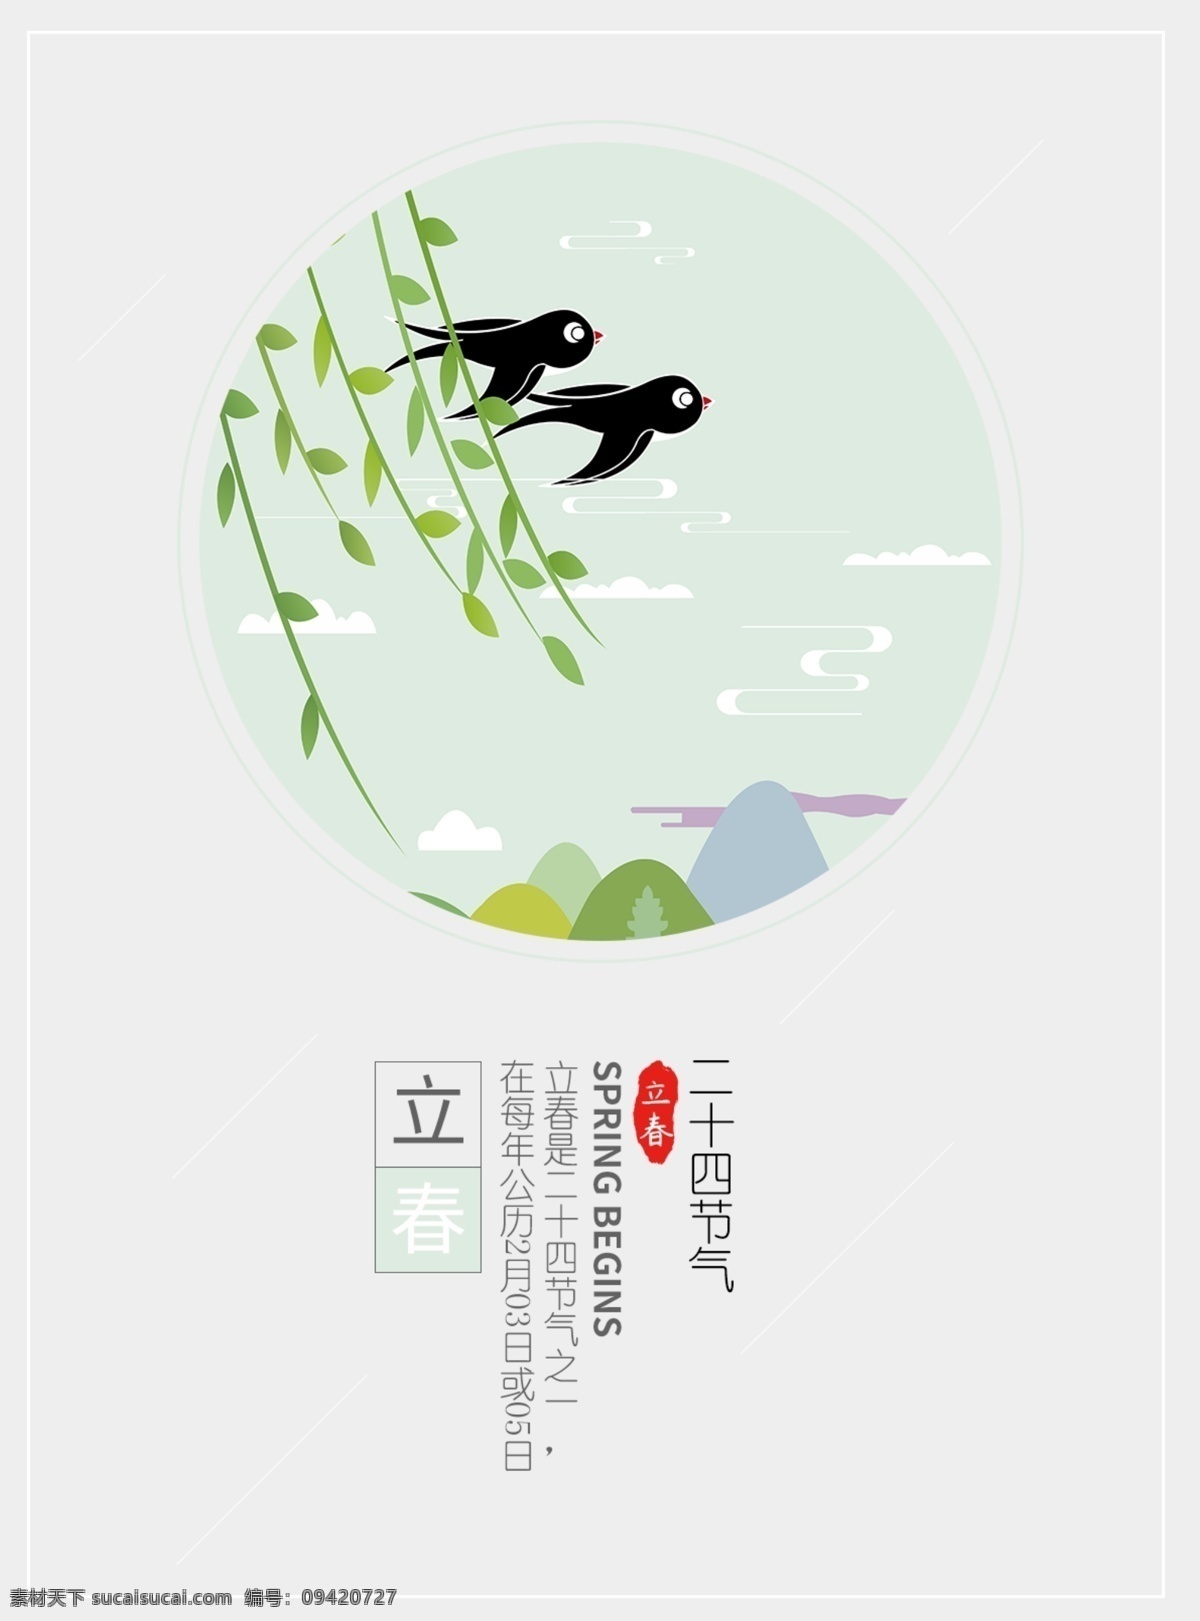 立春海报 中国传统节日 二十四节气 立春 燕子 柳枝